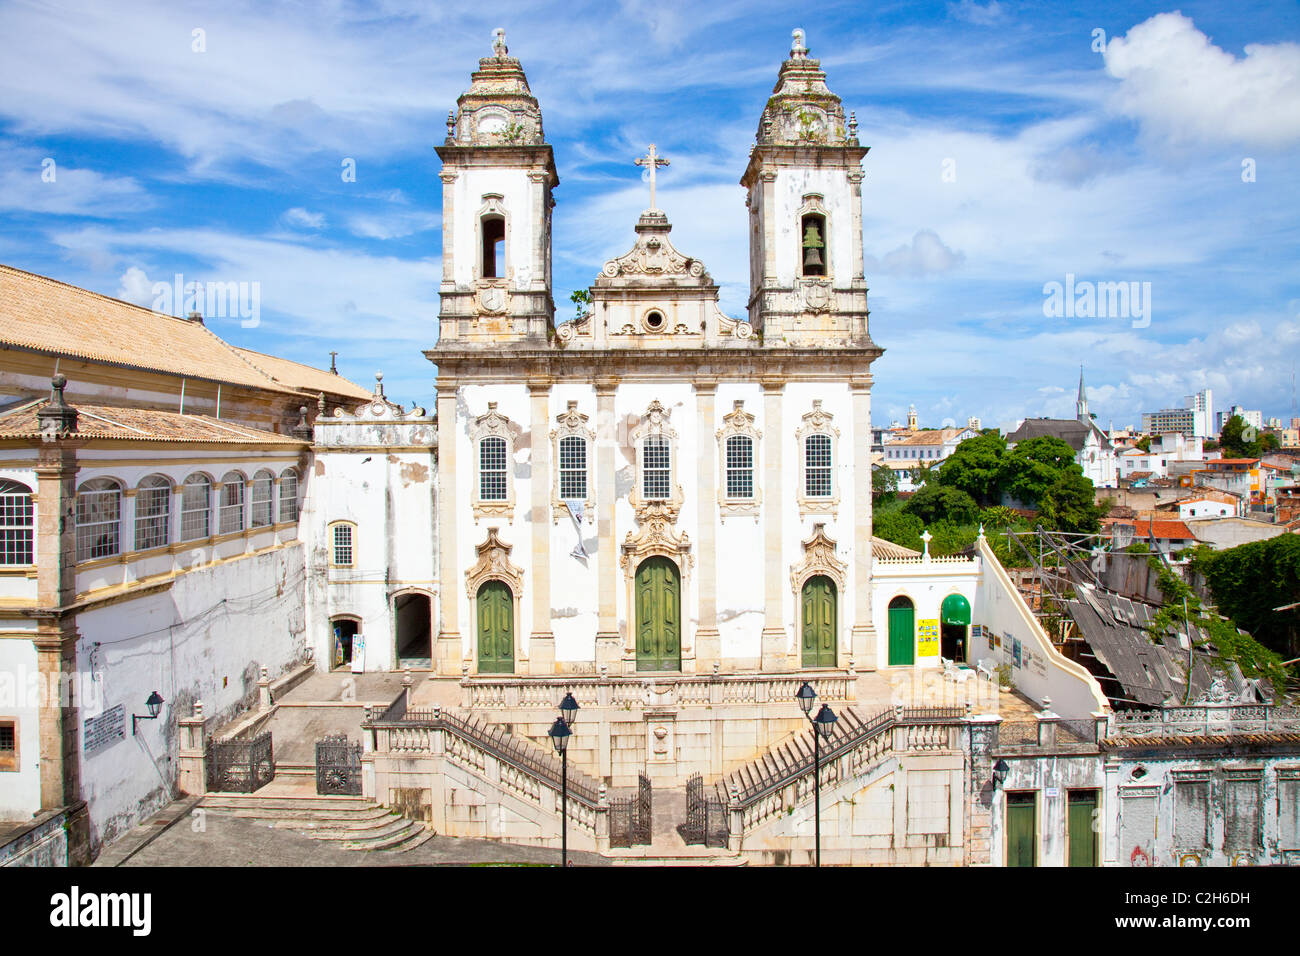 Igreja da Ordem Terceira do Carmo y el Pelourinho, antiguo Salvador, Brasil Foto de stock